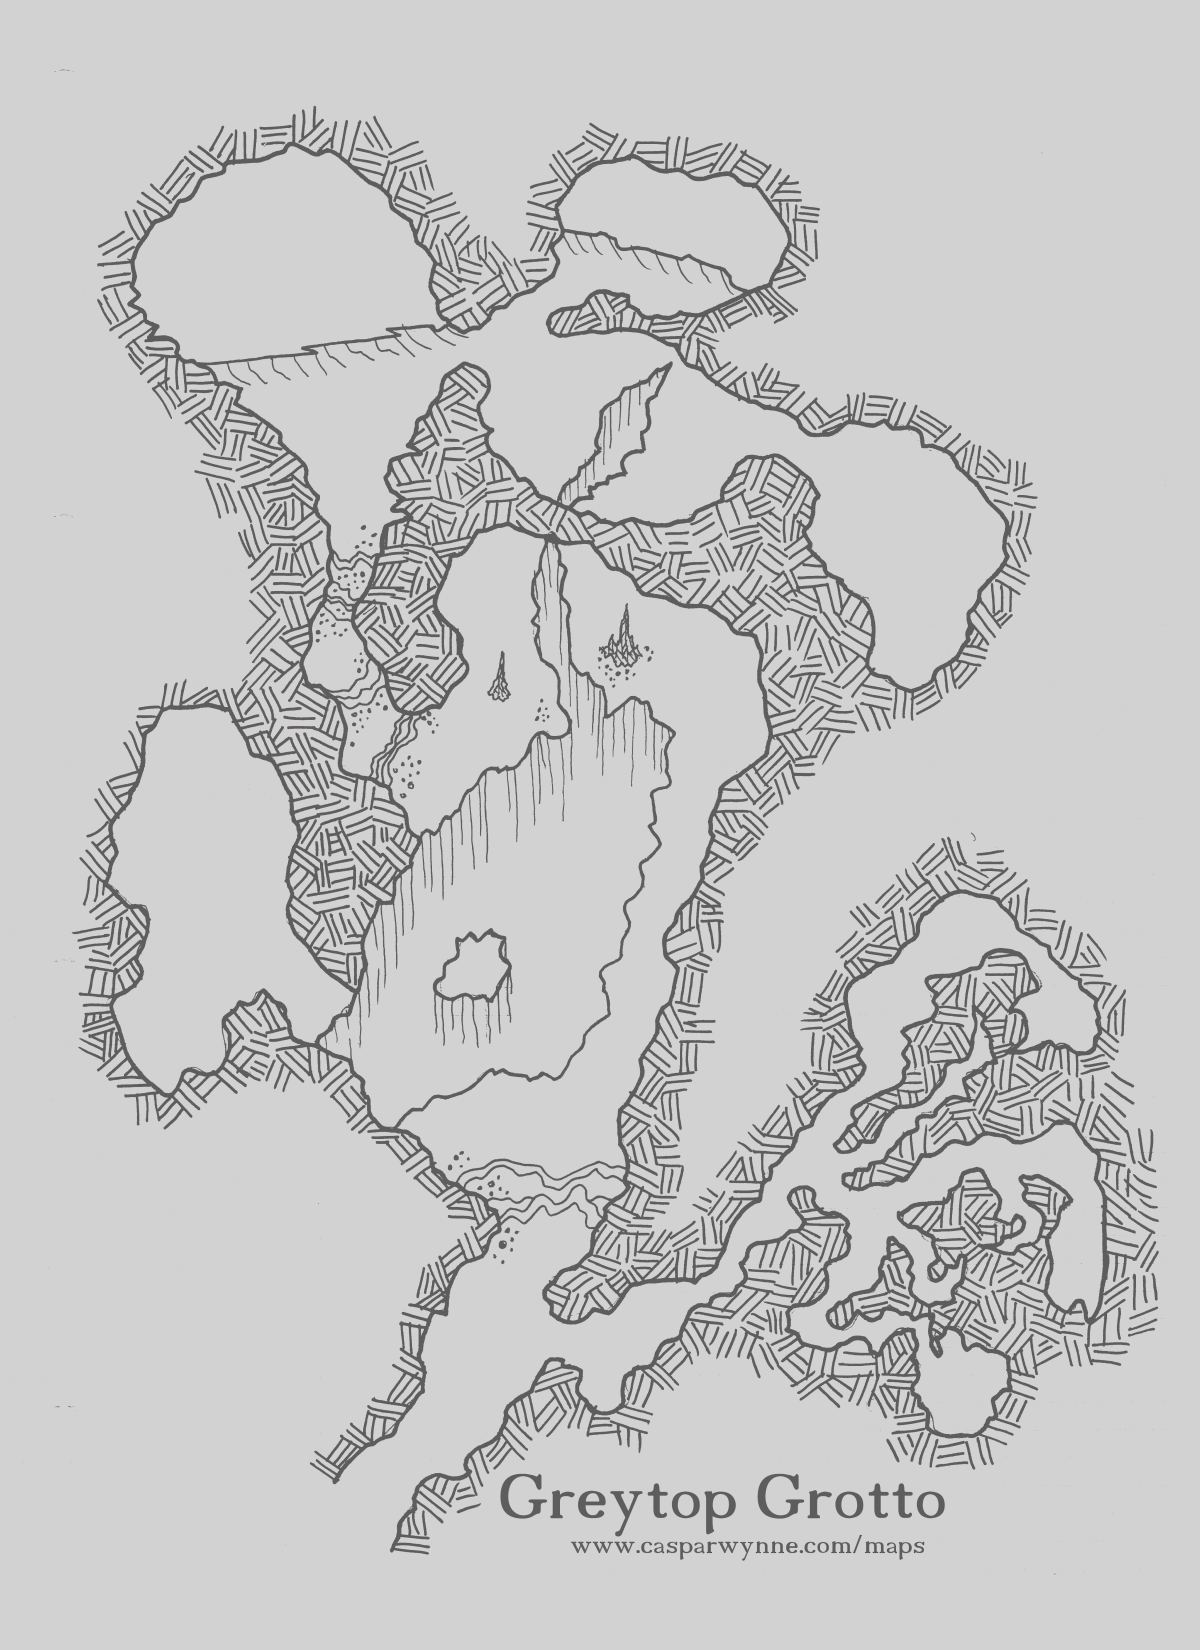 Map: Greytop Grotto